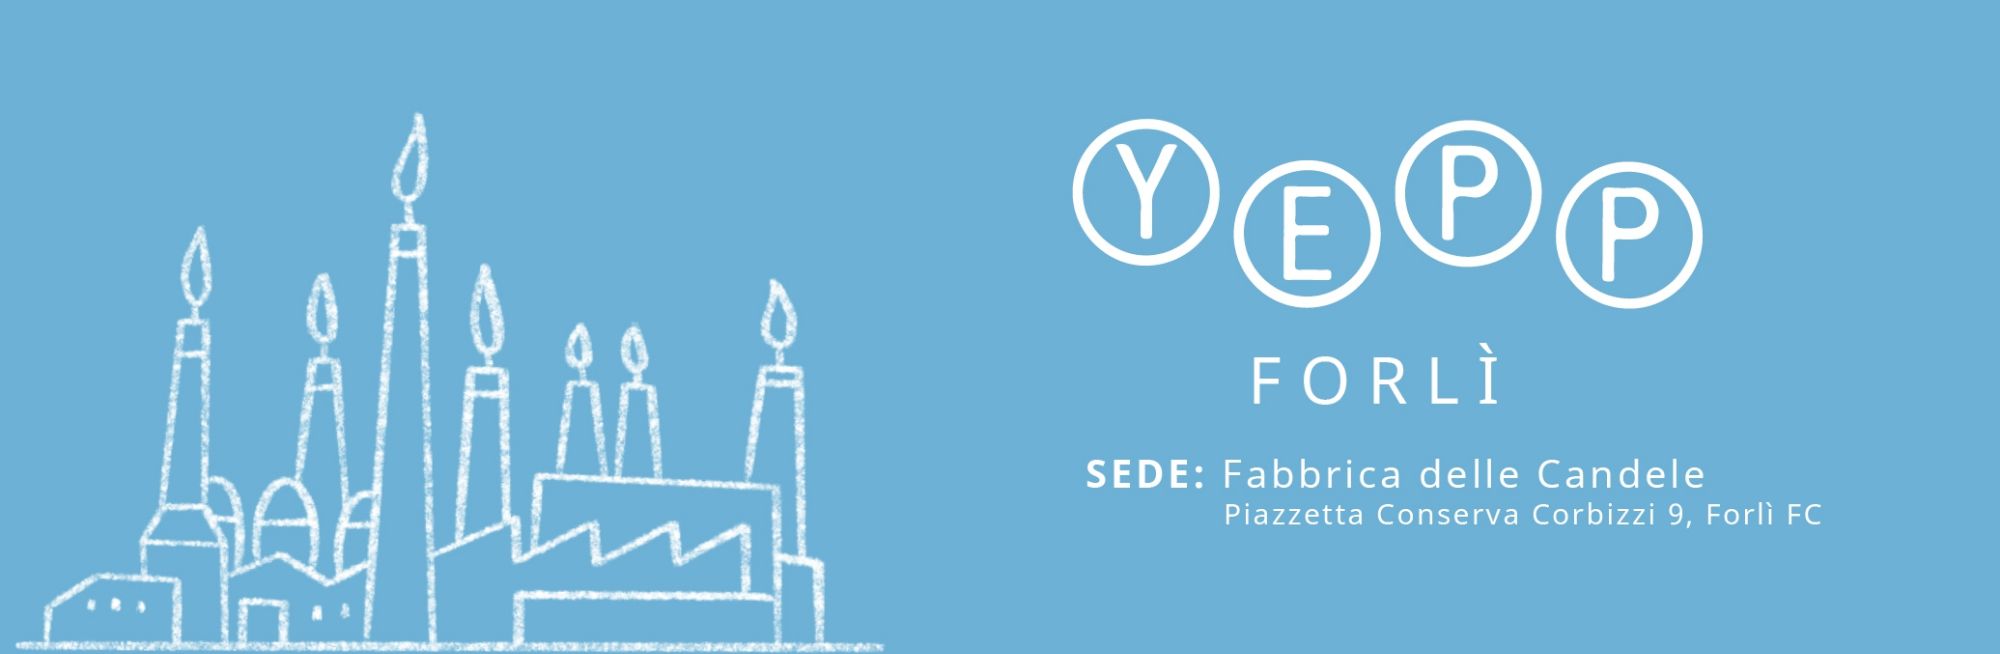 Nasce YEPP Forlì - giovani protagonisti del cambiamento